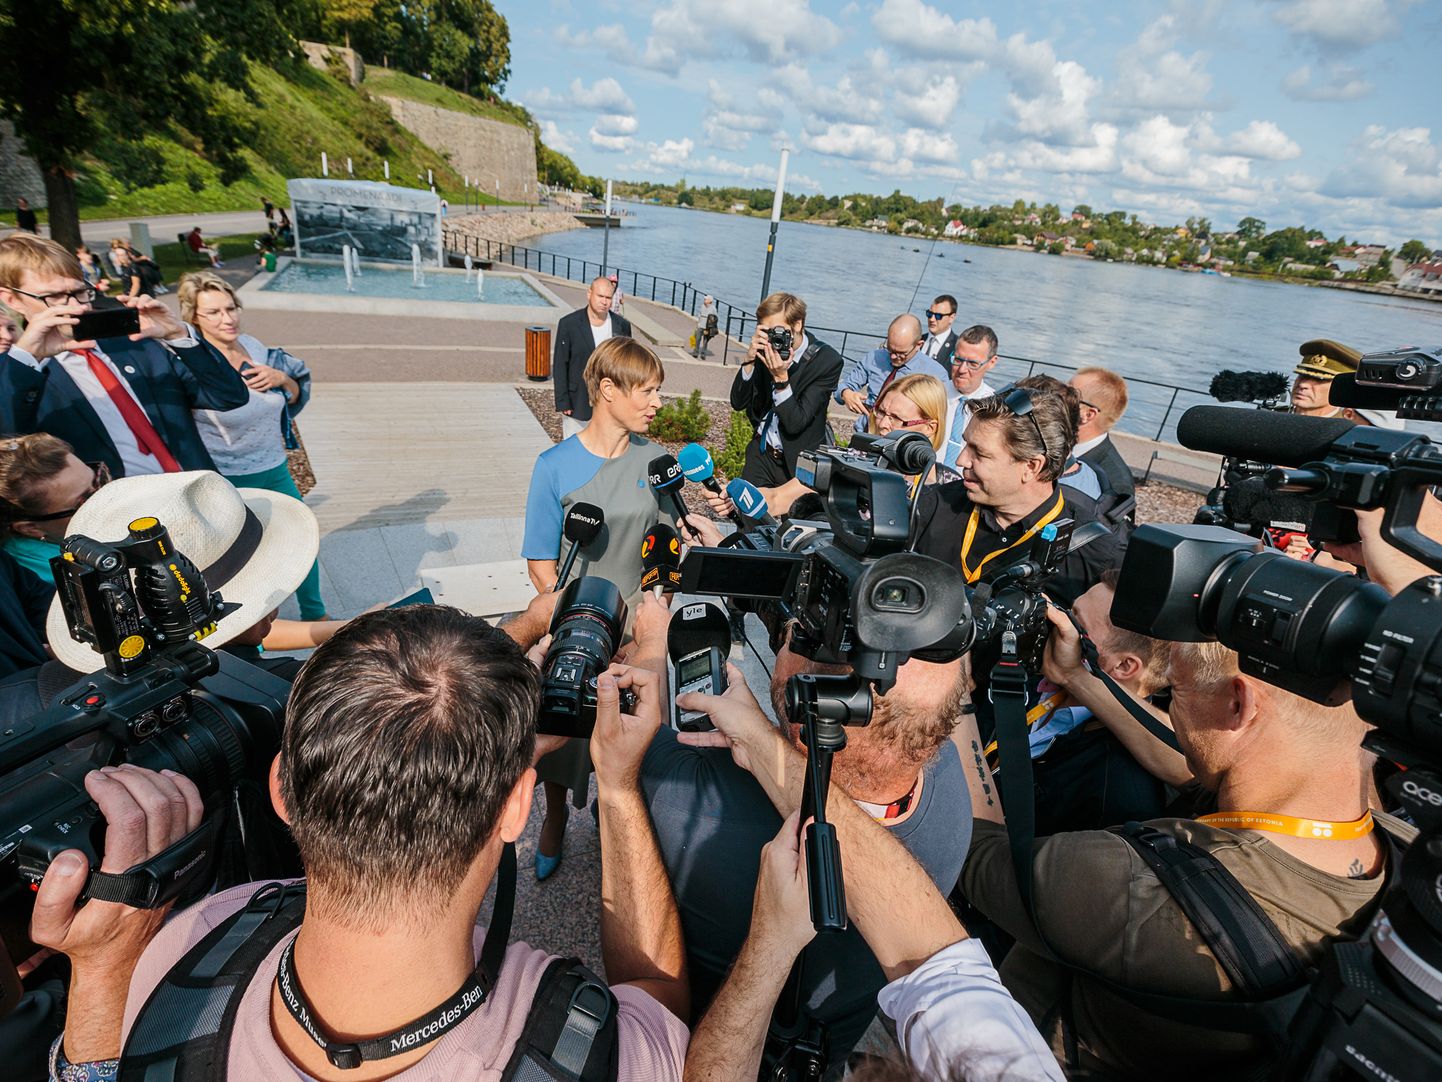 Augustis oma esimest töönädalat Ida-Virumaal alustanud president Kersti Kaljulaid on Narva jõepromenaadil ajakirjanike piiramisrõngas. Presidendi sõnumid ja pikem kohalolek Ida-Virumaal tõid ohtralt positiivset tähelepanu kogu maakonnale.  ILJA SMIRNOV